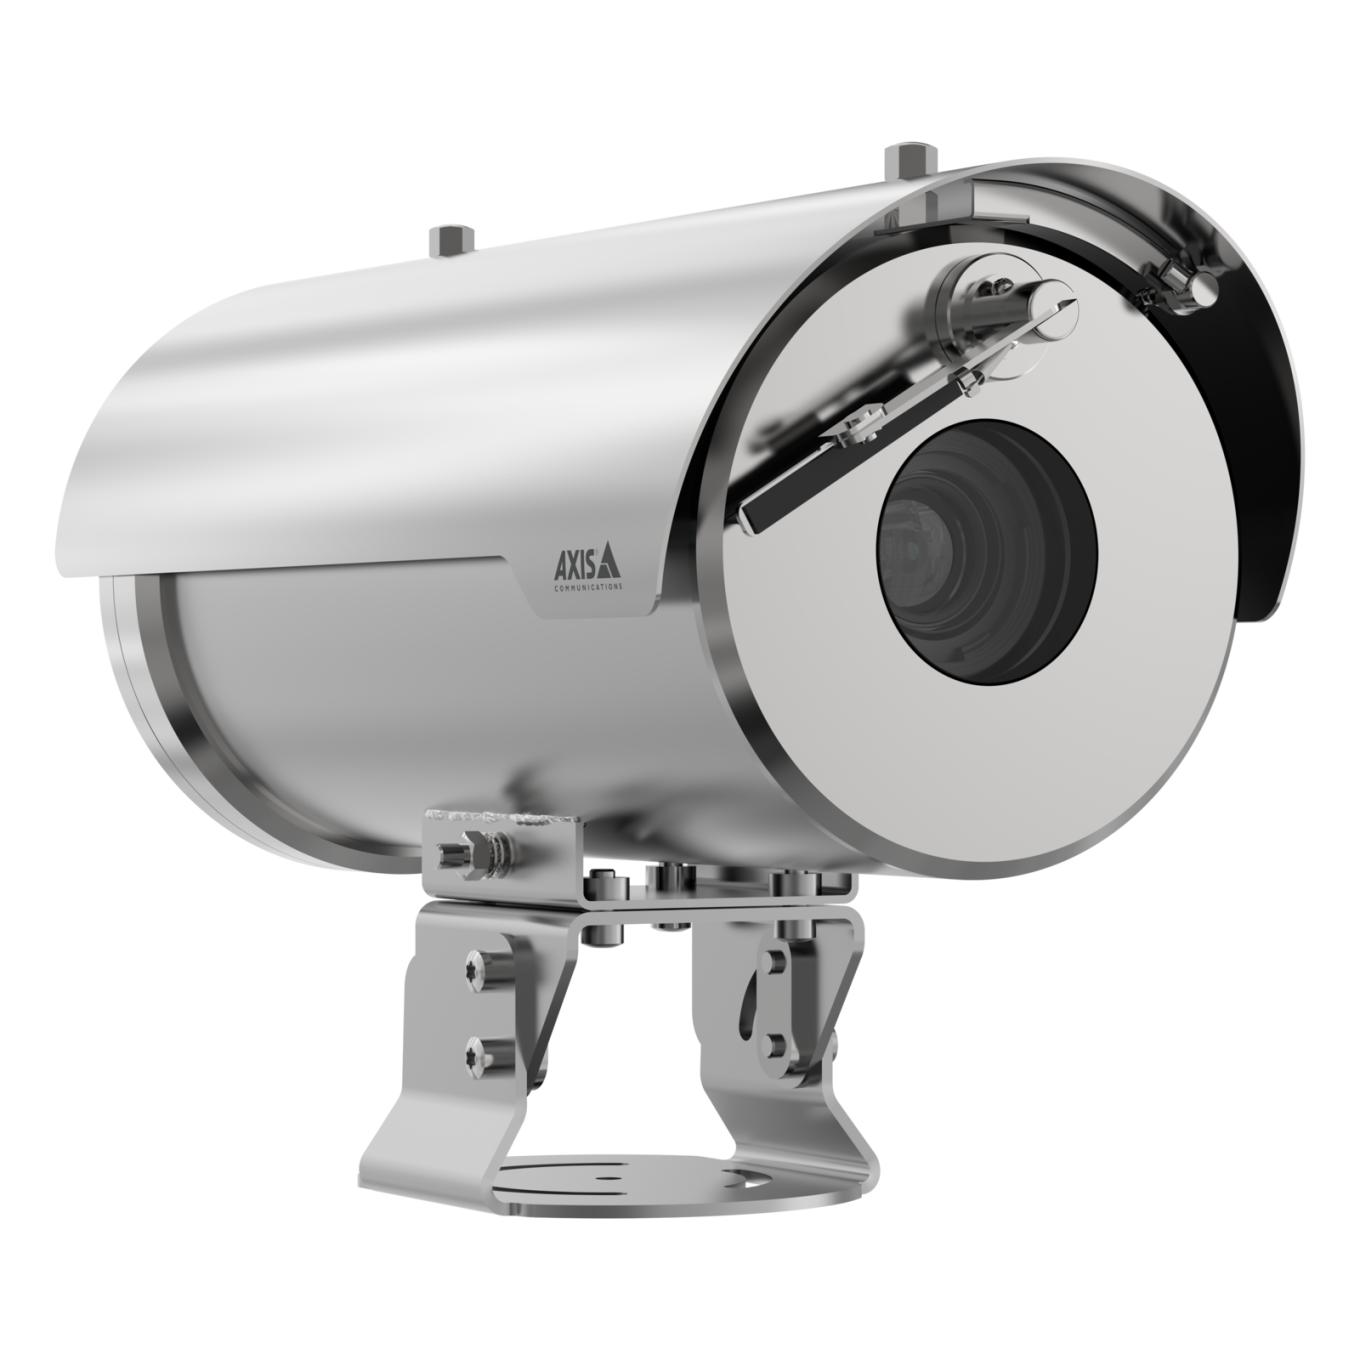 Telecamera di colore argento AXIS XFQ1656, vista dal suo angolo destro.